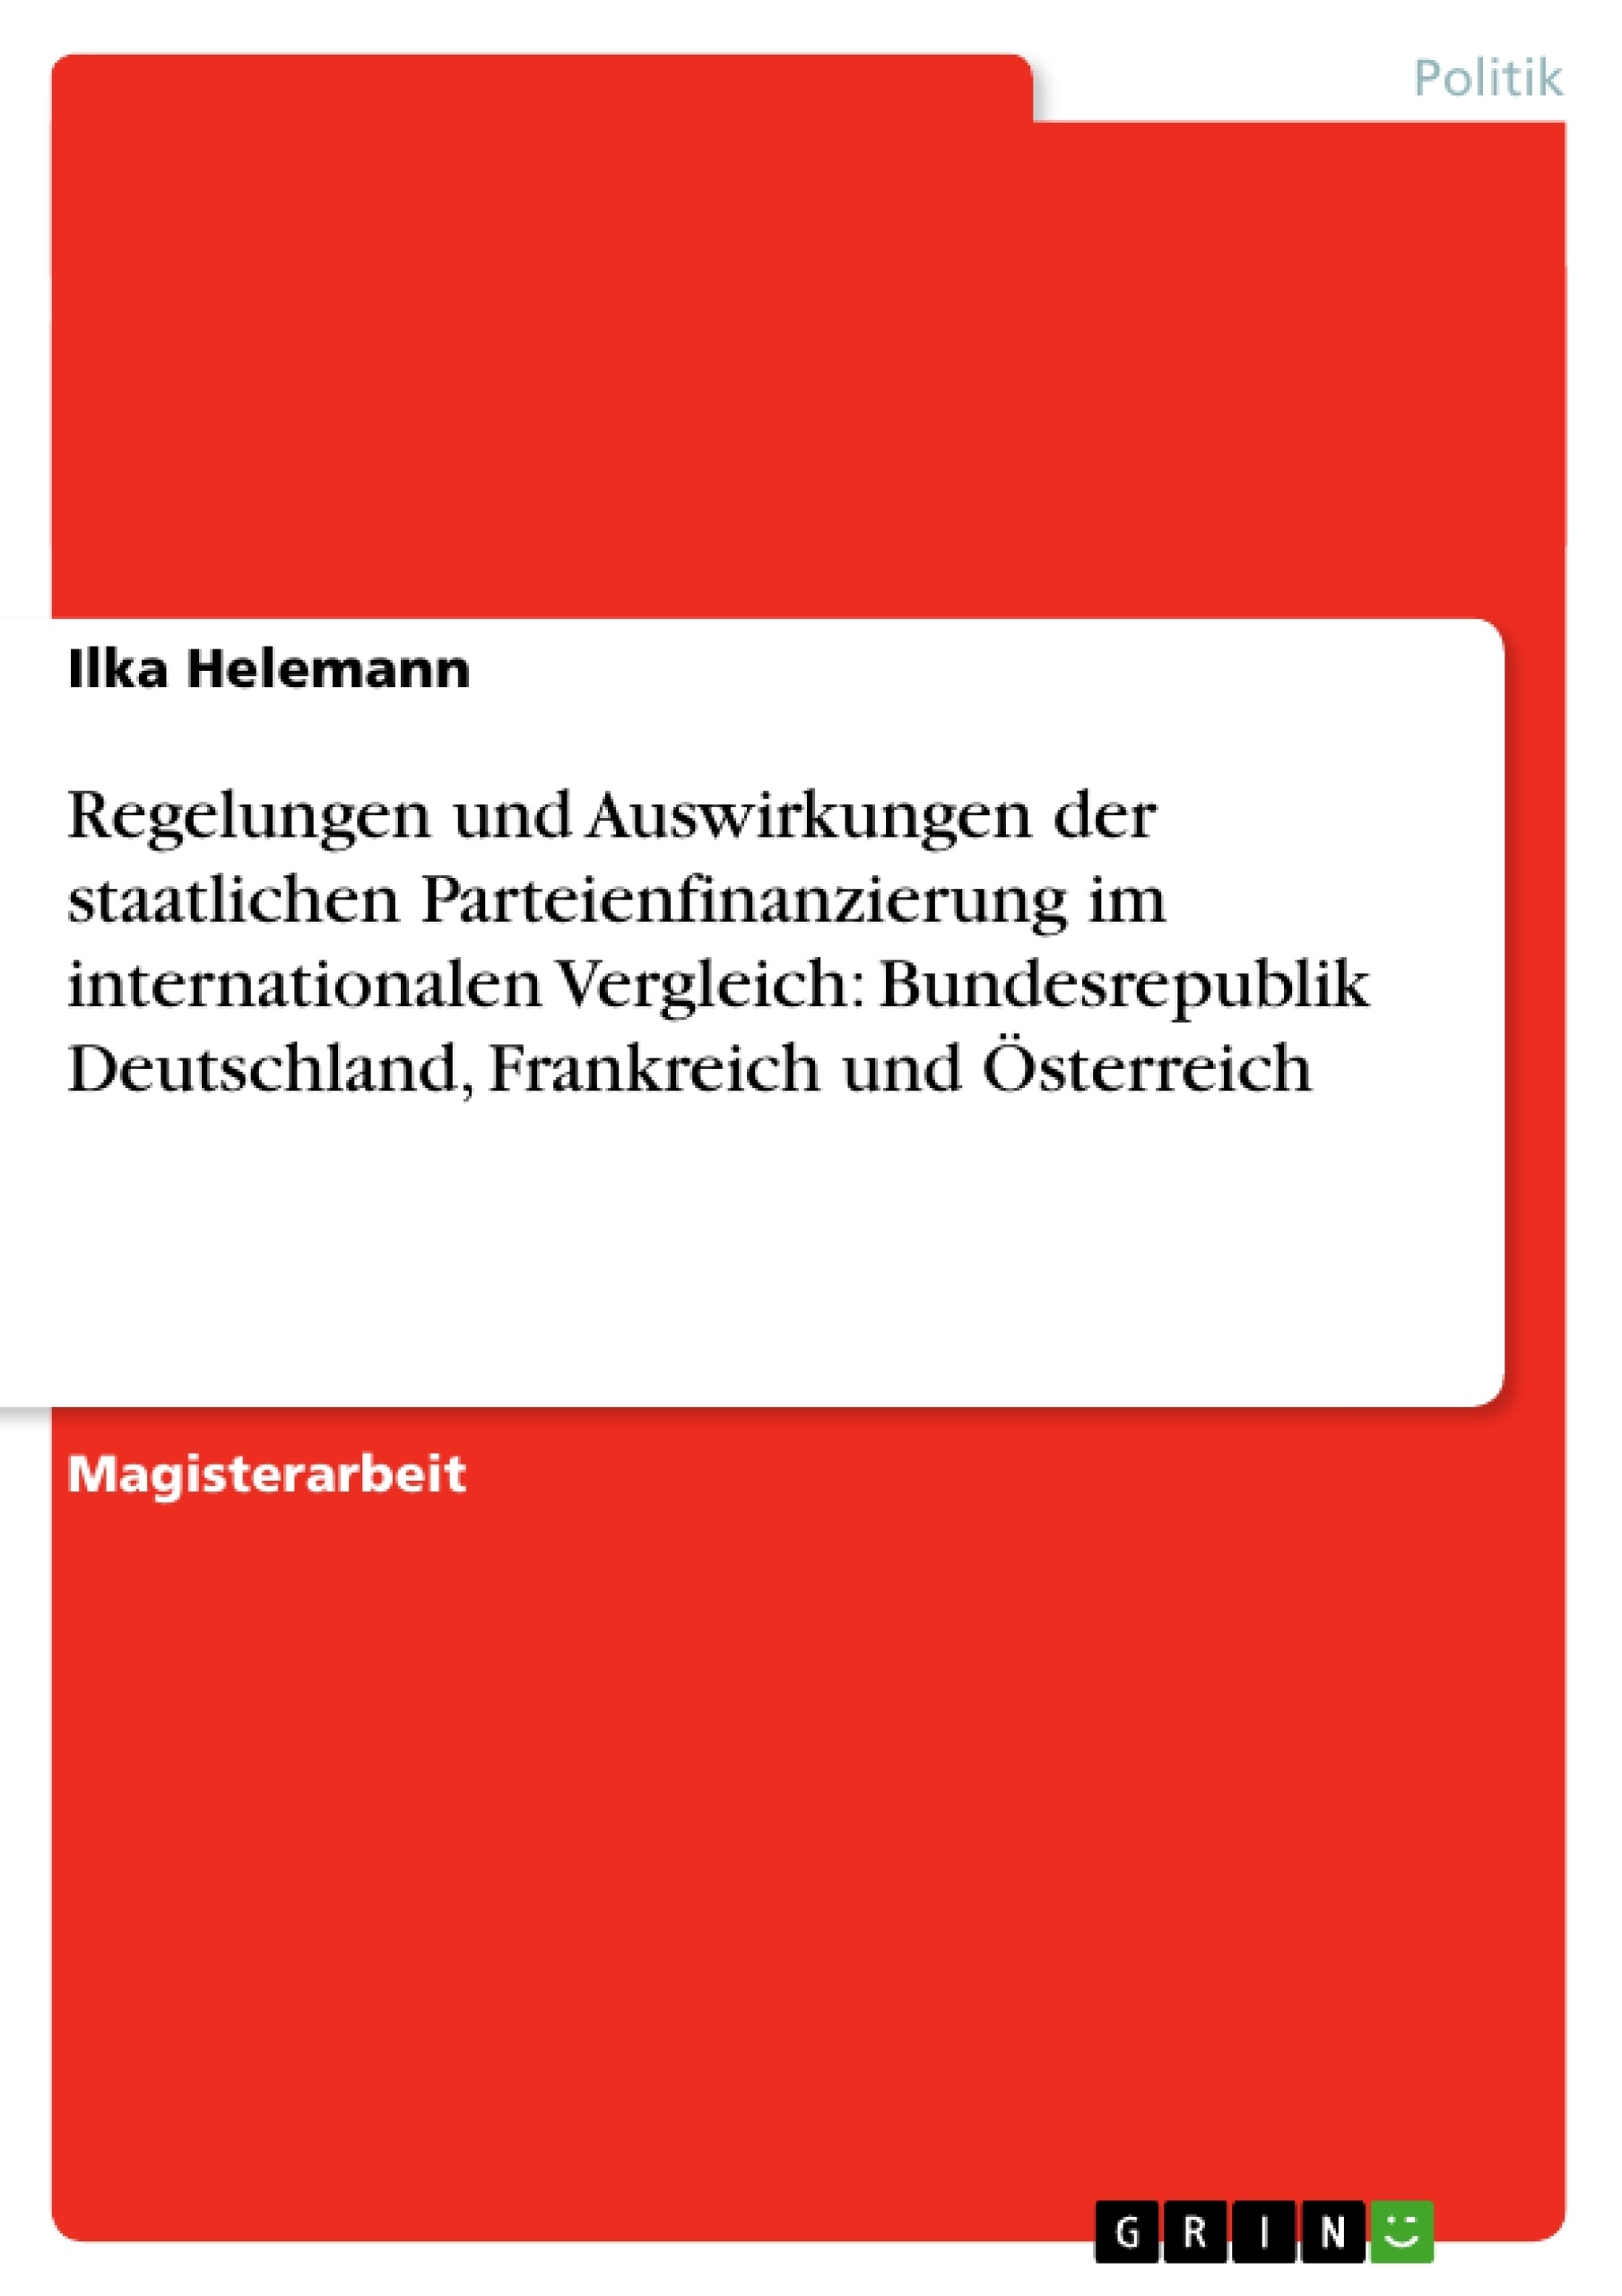 Title: Regelungen und Auswirkungen der staatlichen Parteienfinanzierung im internationalen Vergleich: Bundesrepublik Deutschland, Frankreich und Österreich